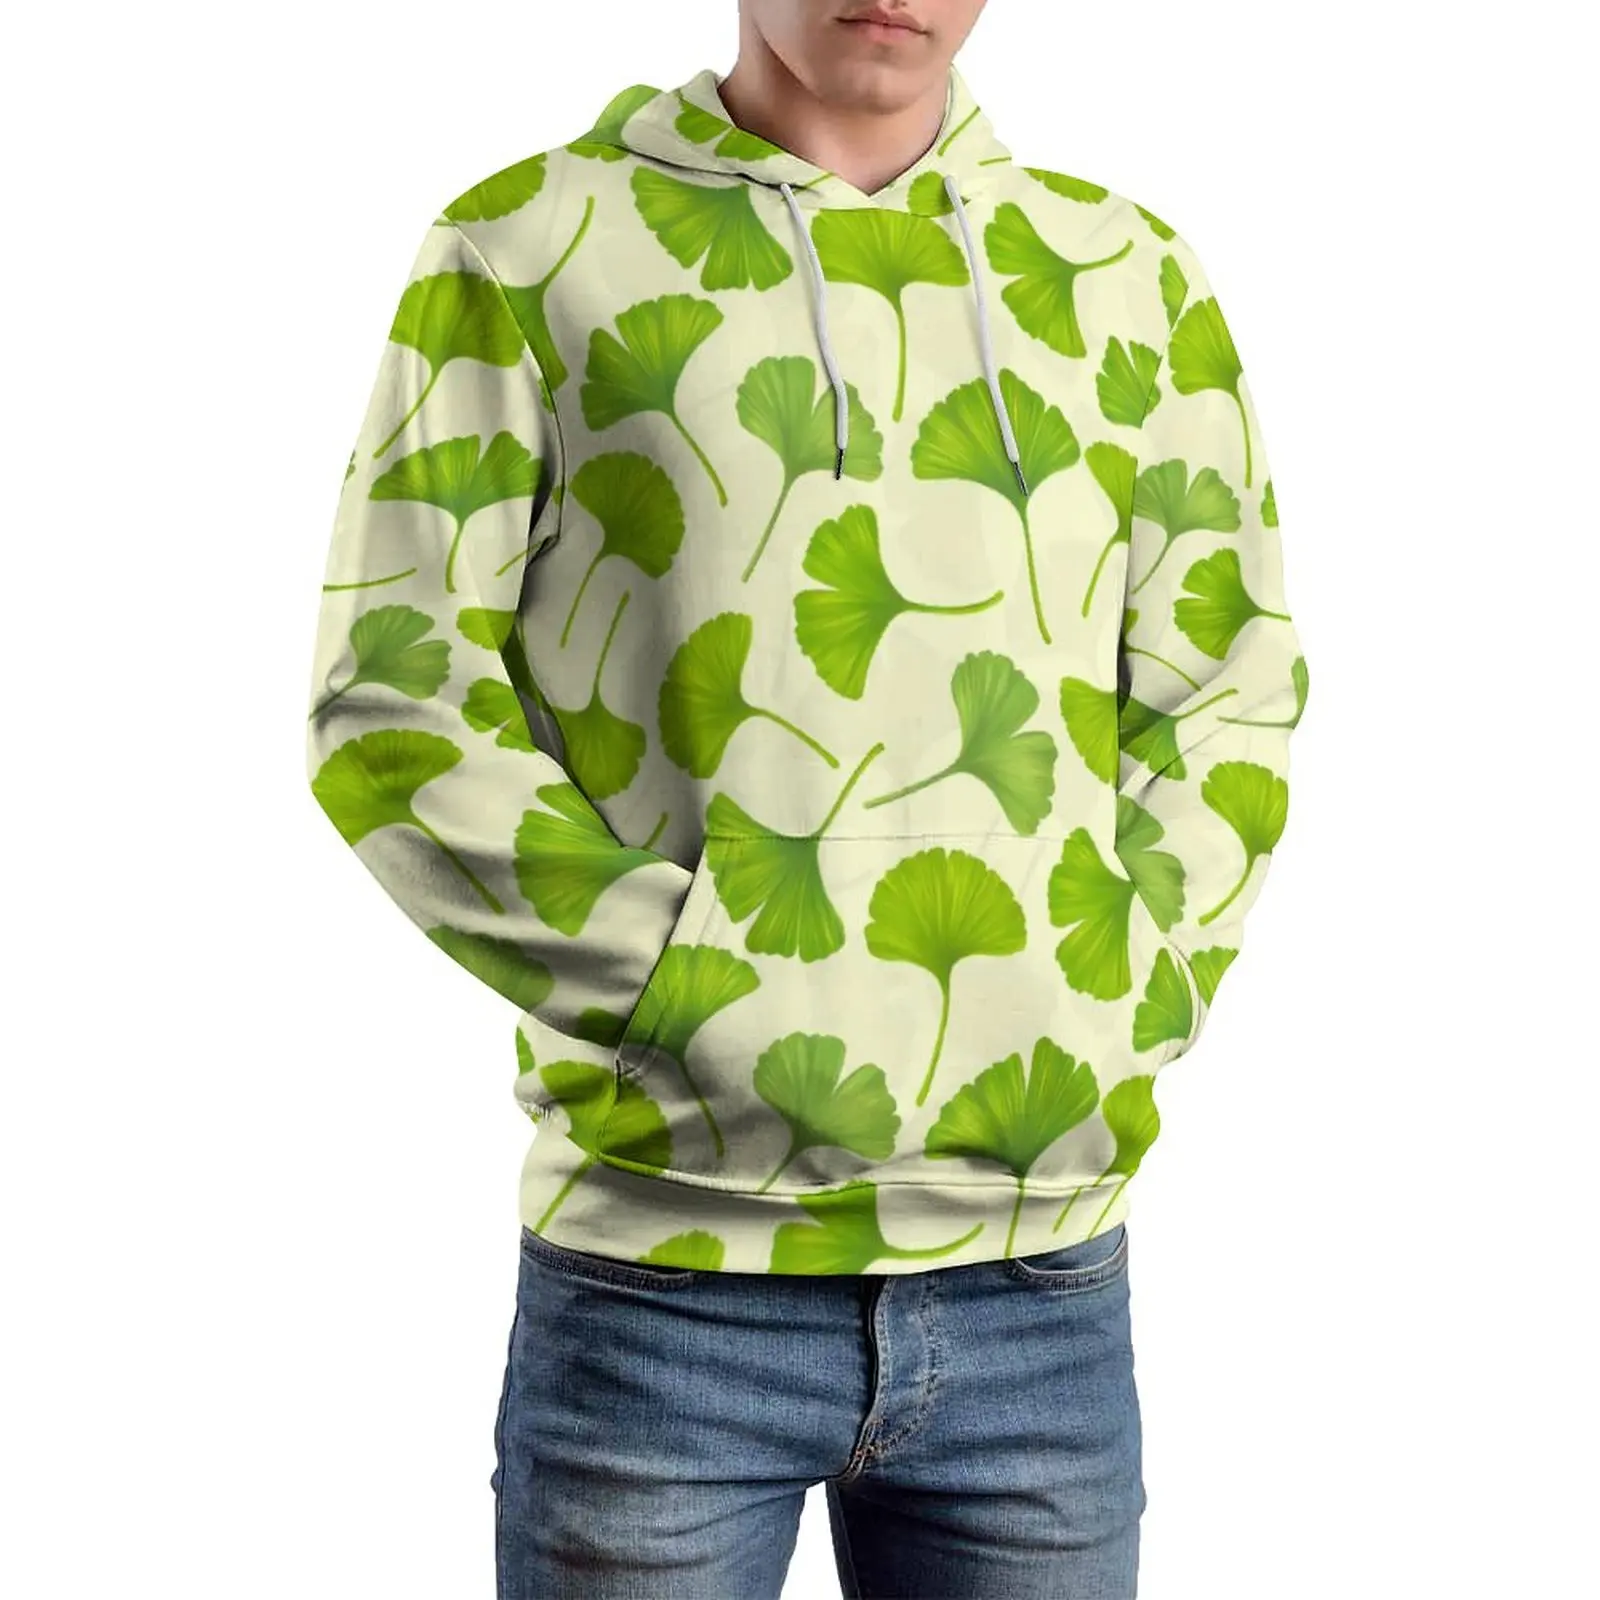 

Толстовка Ginko Biloba мужская свободного покроя, худи с принтом зеленых листьев, с длинным рукавом, оверсайз, повседневная одежда с графическим принтом